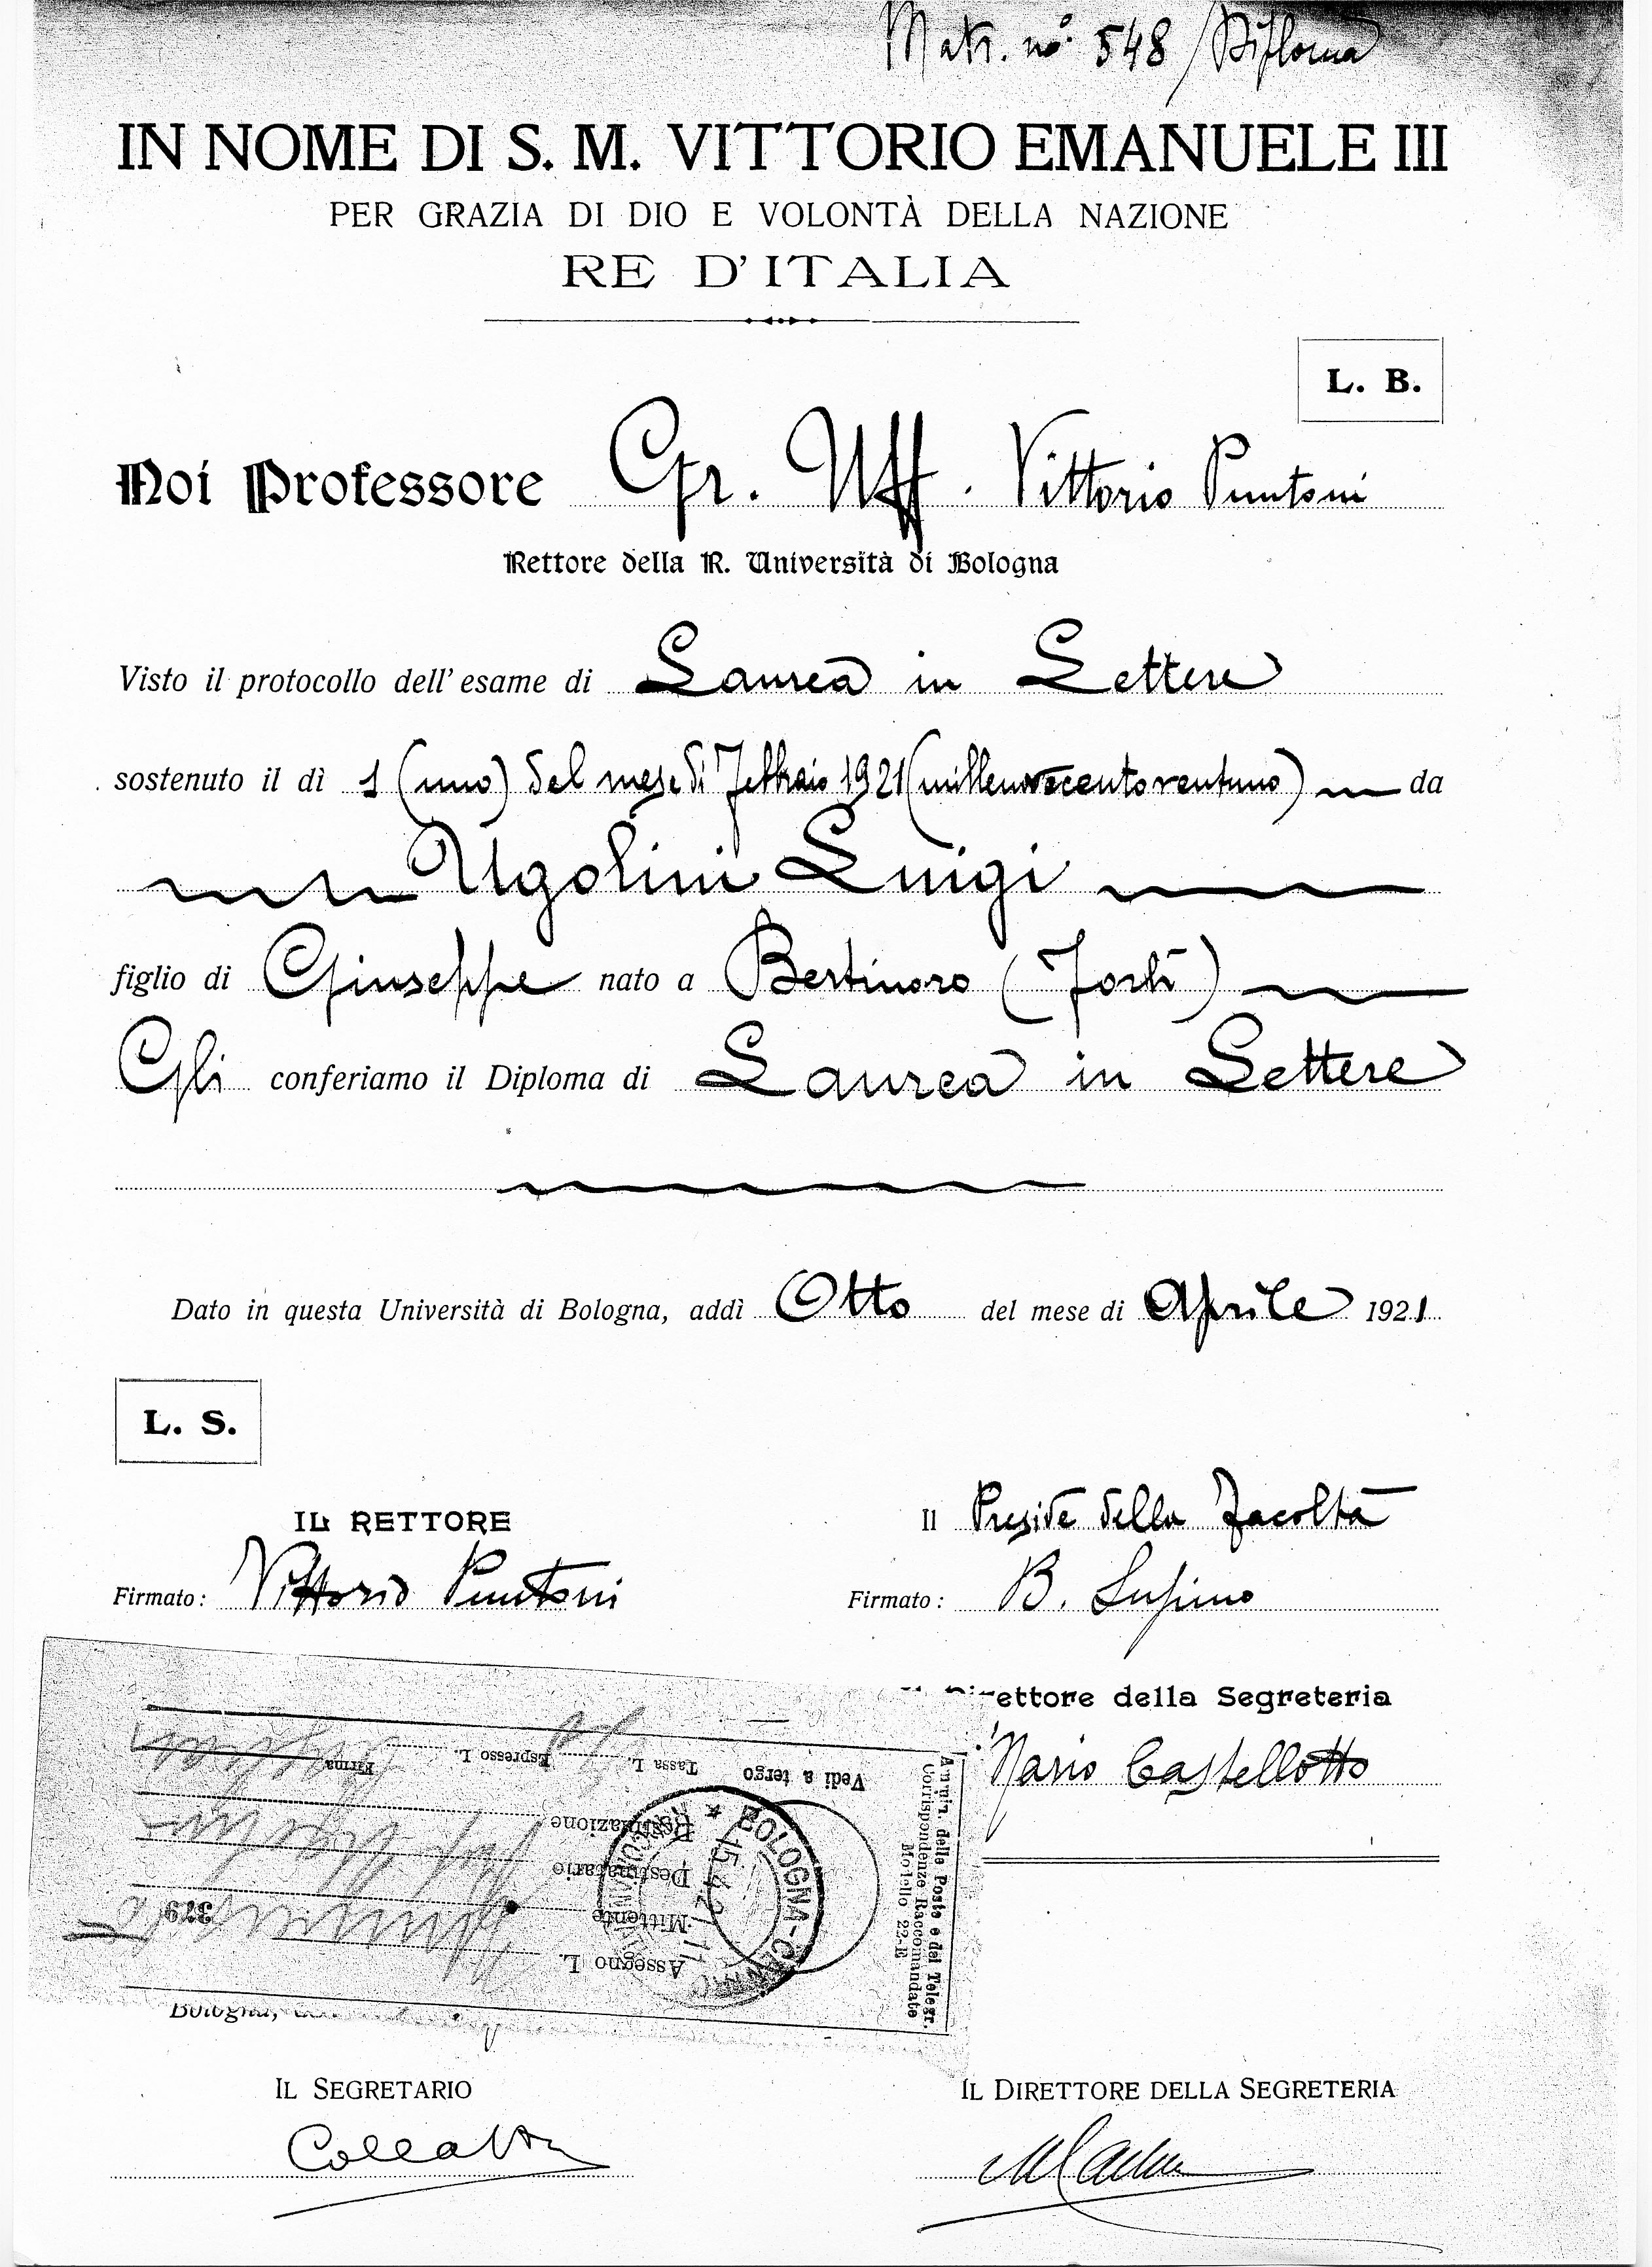 Certificato della Laurea in Lettere all'Università di Bologna di Luigi M. Ugolini